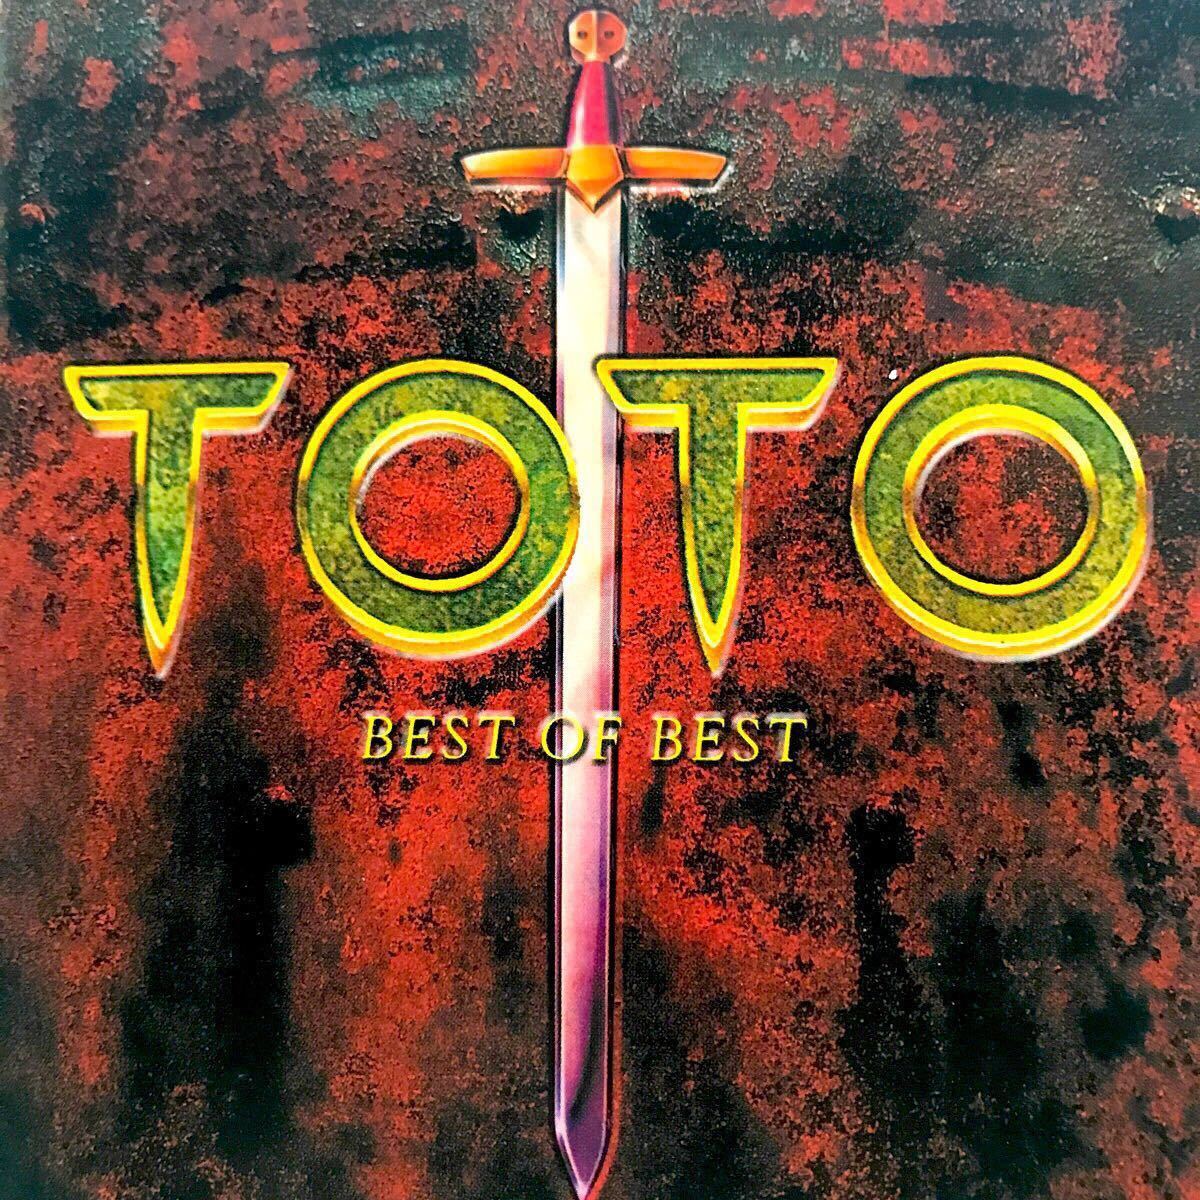 ◆TOTO/《ベスト･オブ･ベスト》 (国内盤･CD) （DQCP-1519）